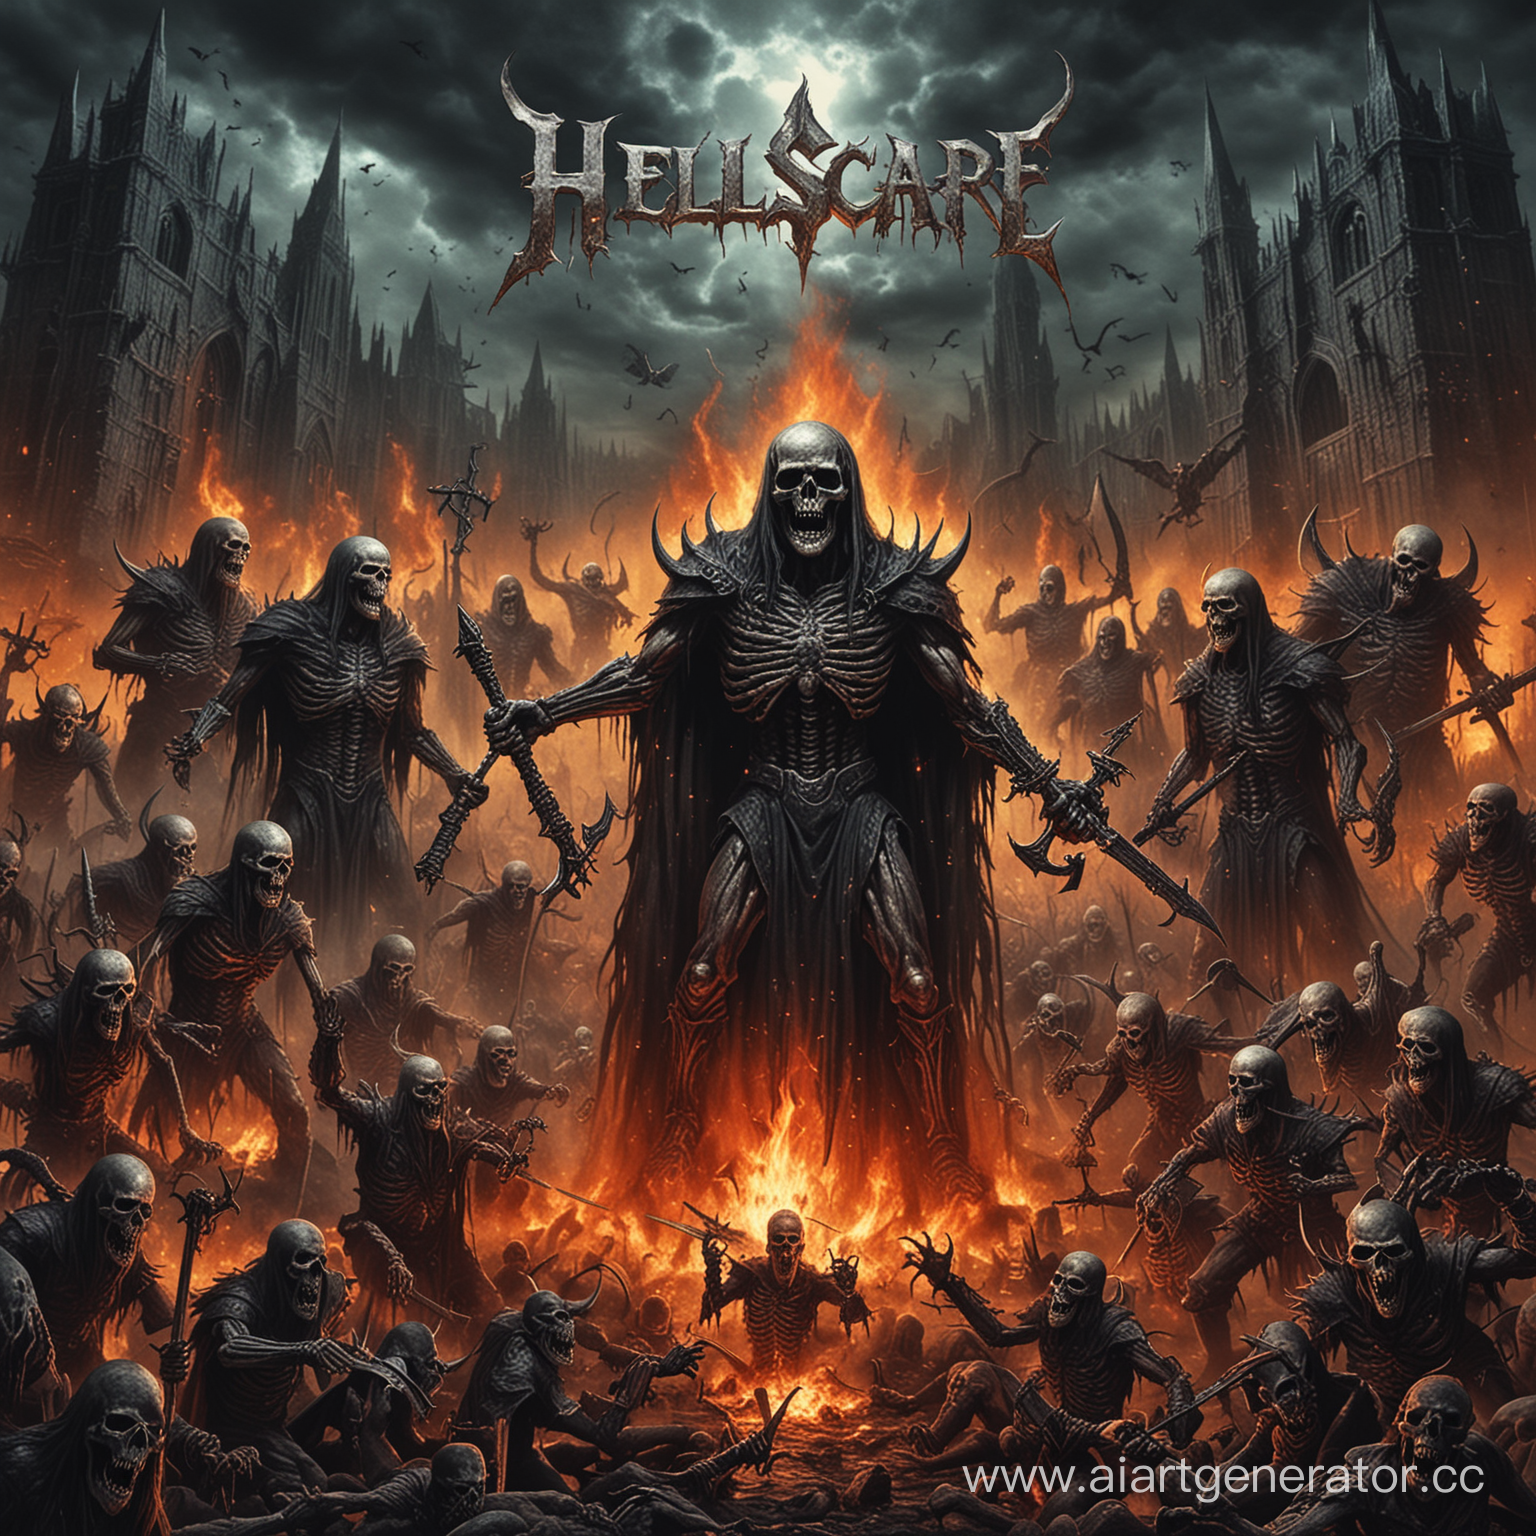 hellscape, metal album cover, hell, demons, skeletons, skulls, fire 